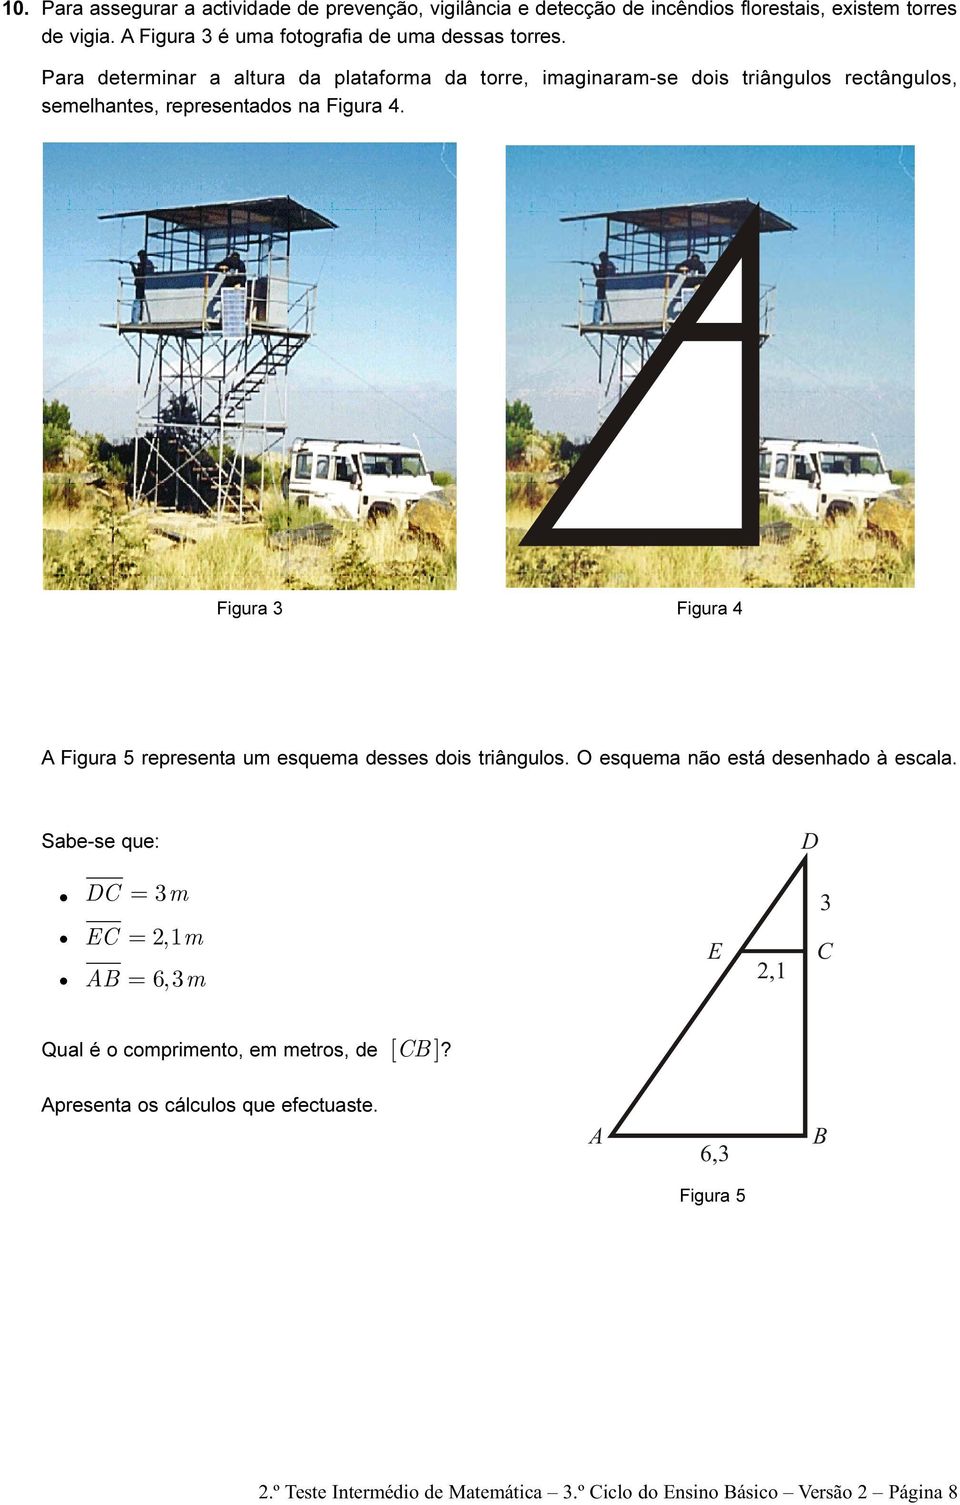 Para determinar a altura da plataforma da torre, imaginaram-se dois triângulos rectângulos, semelhantes, representados na Figura 4.